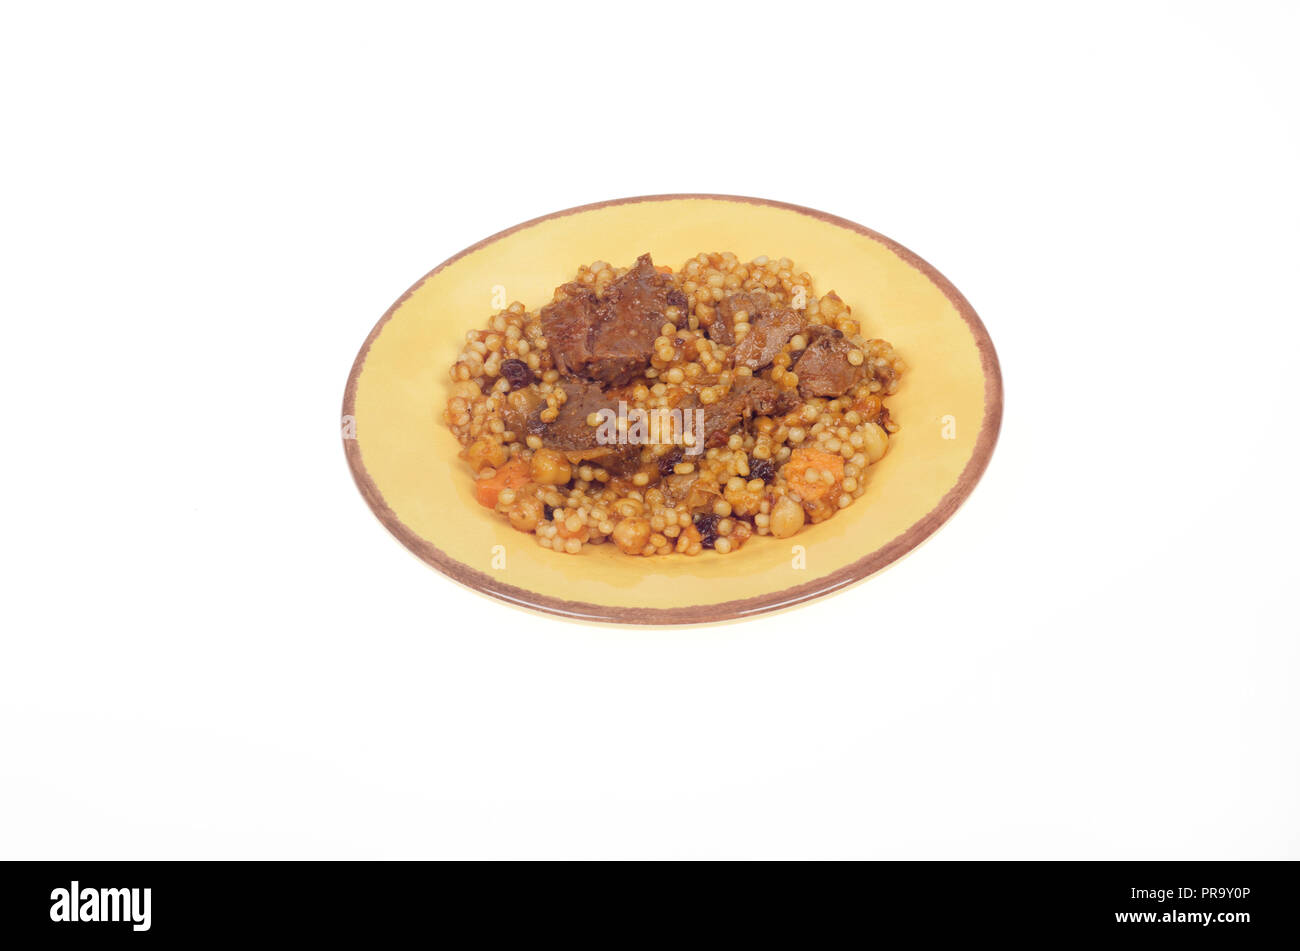 La plaque avec un style marocain avec du couscous boeuf, carottes et pois chiches Banque D'Images